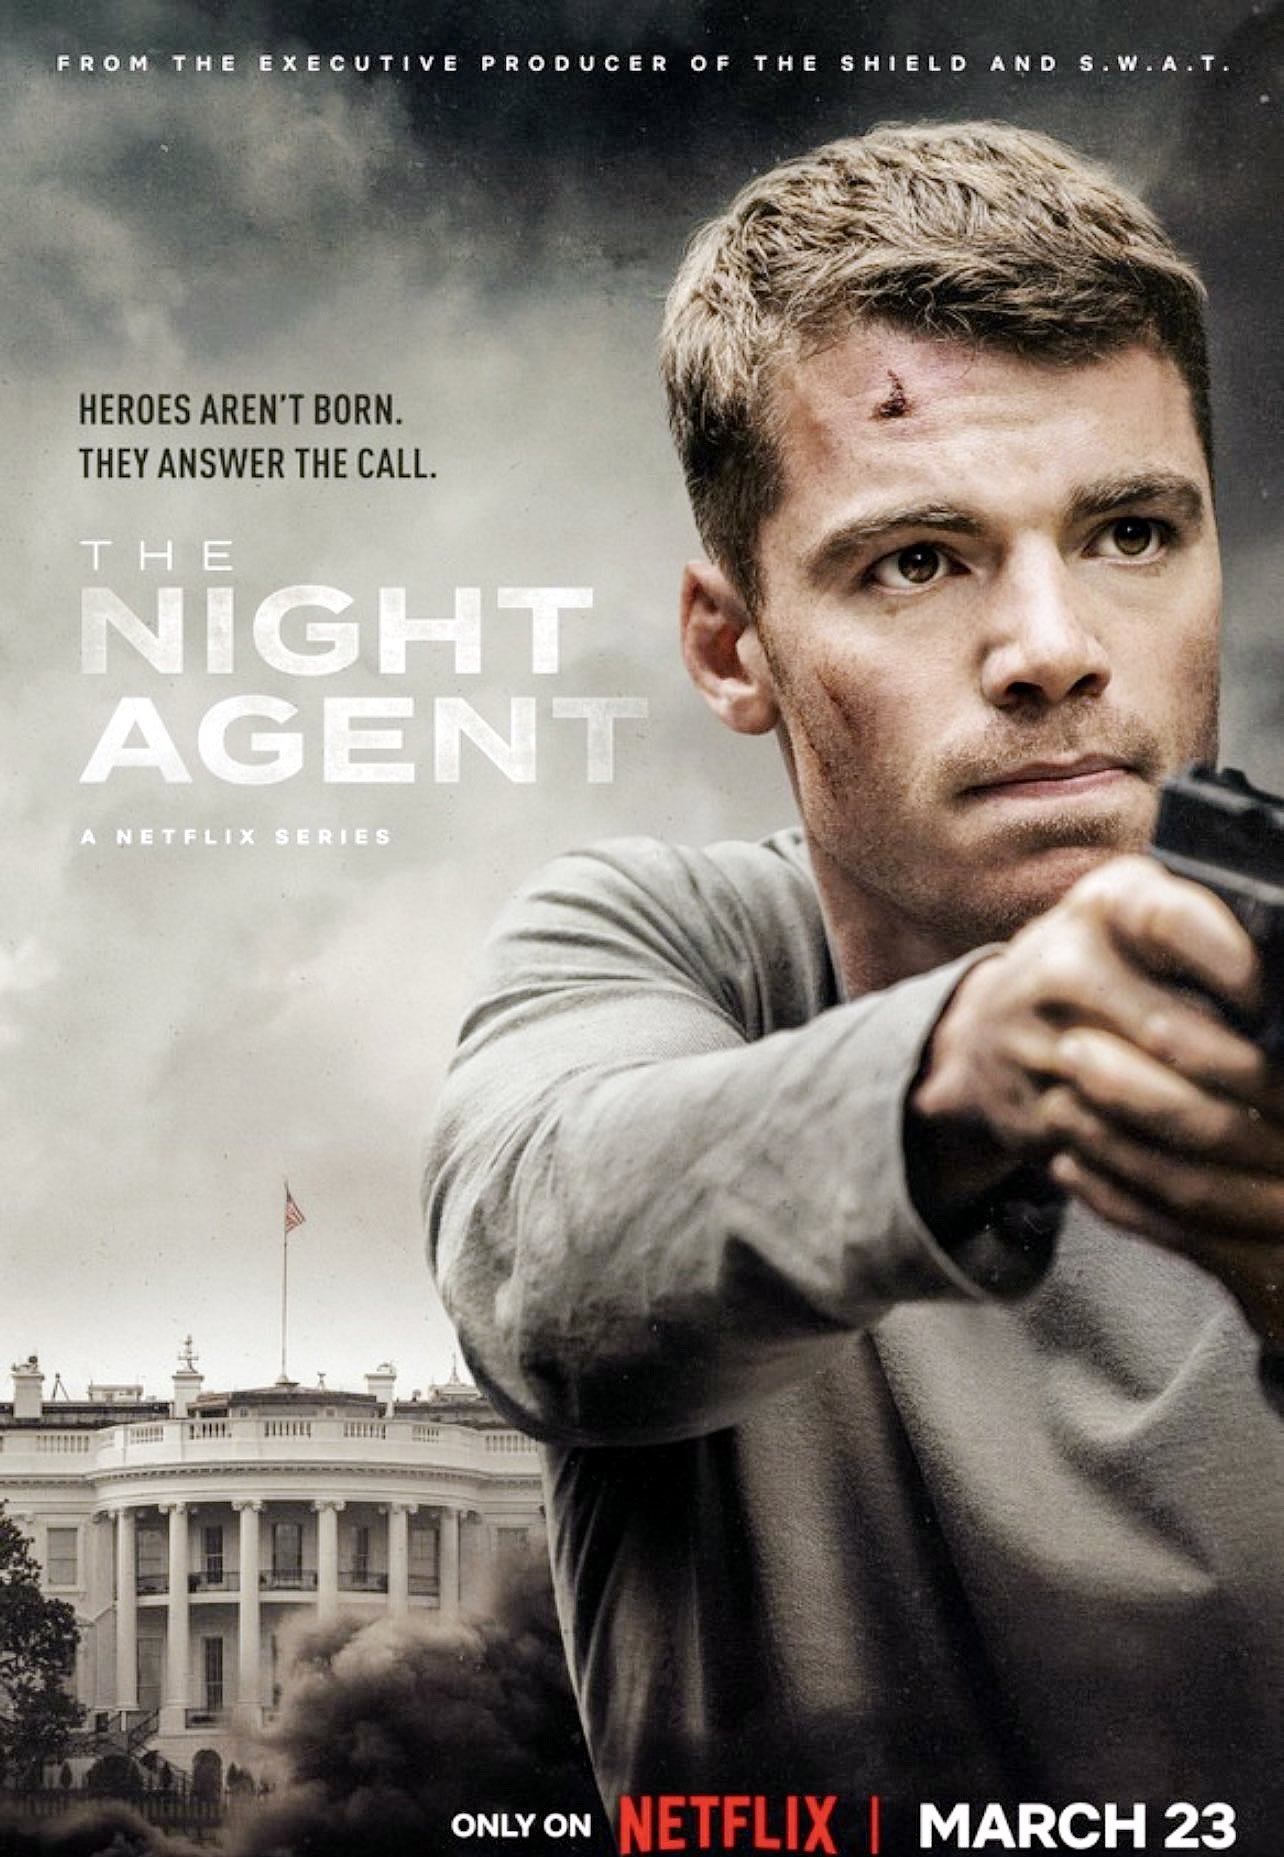 O Agente Noturno 2 | Série com Gabriel Basso é renovada para uma segunda temporada na Netflix